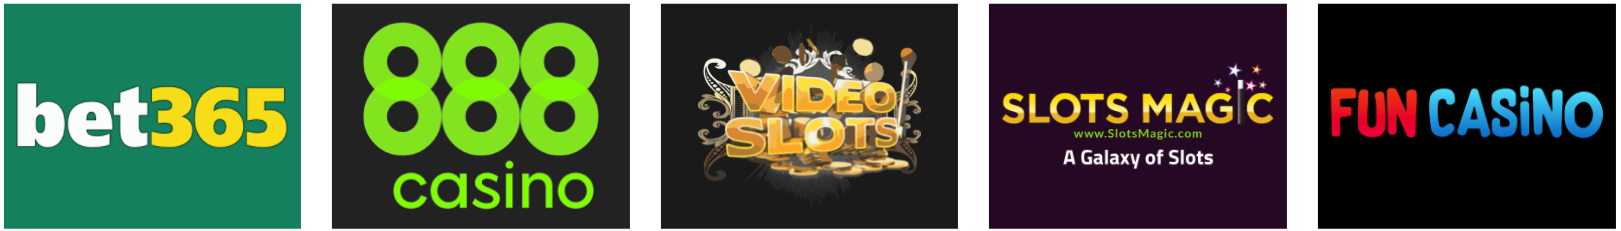 Cele mai bune site-uri de jocuri de noroc la ruletă online